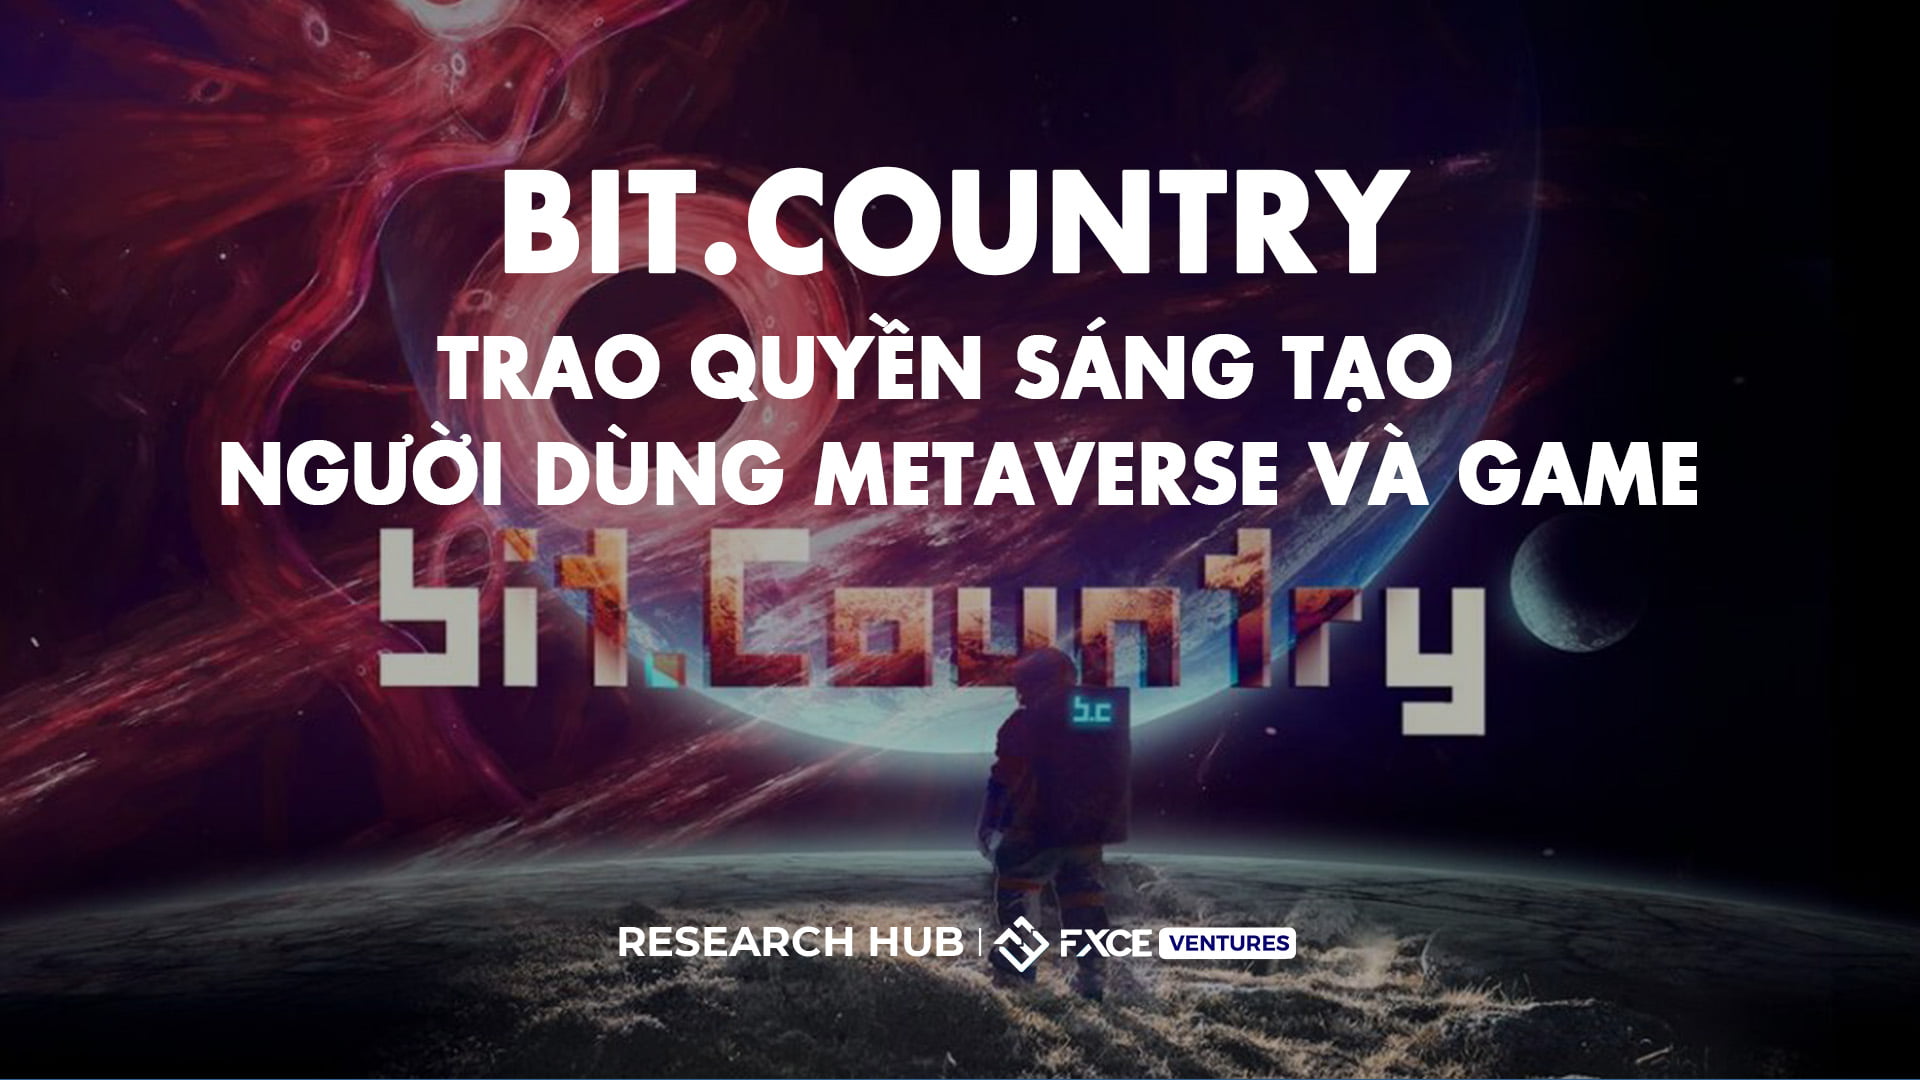 Bit.Country biến ước mơ sáng tạo Metaverse của bạn thành hiện thực